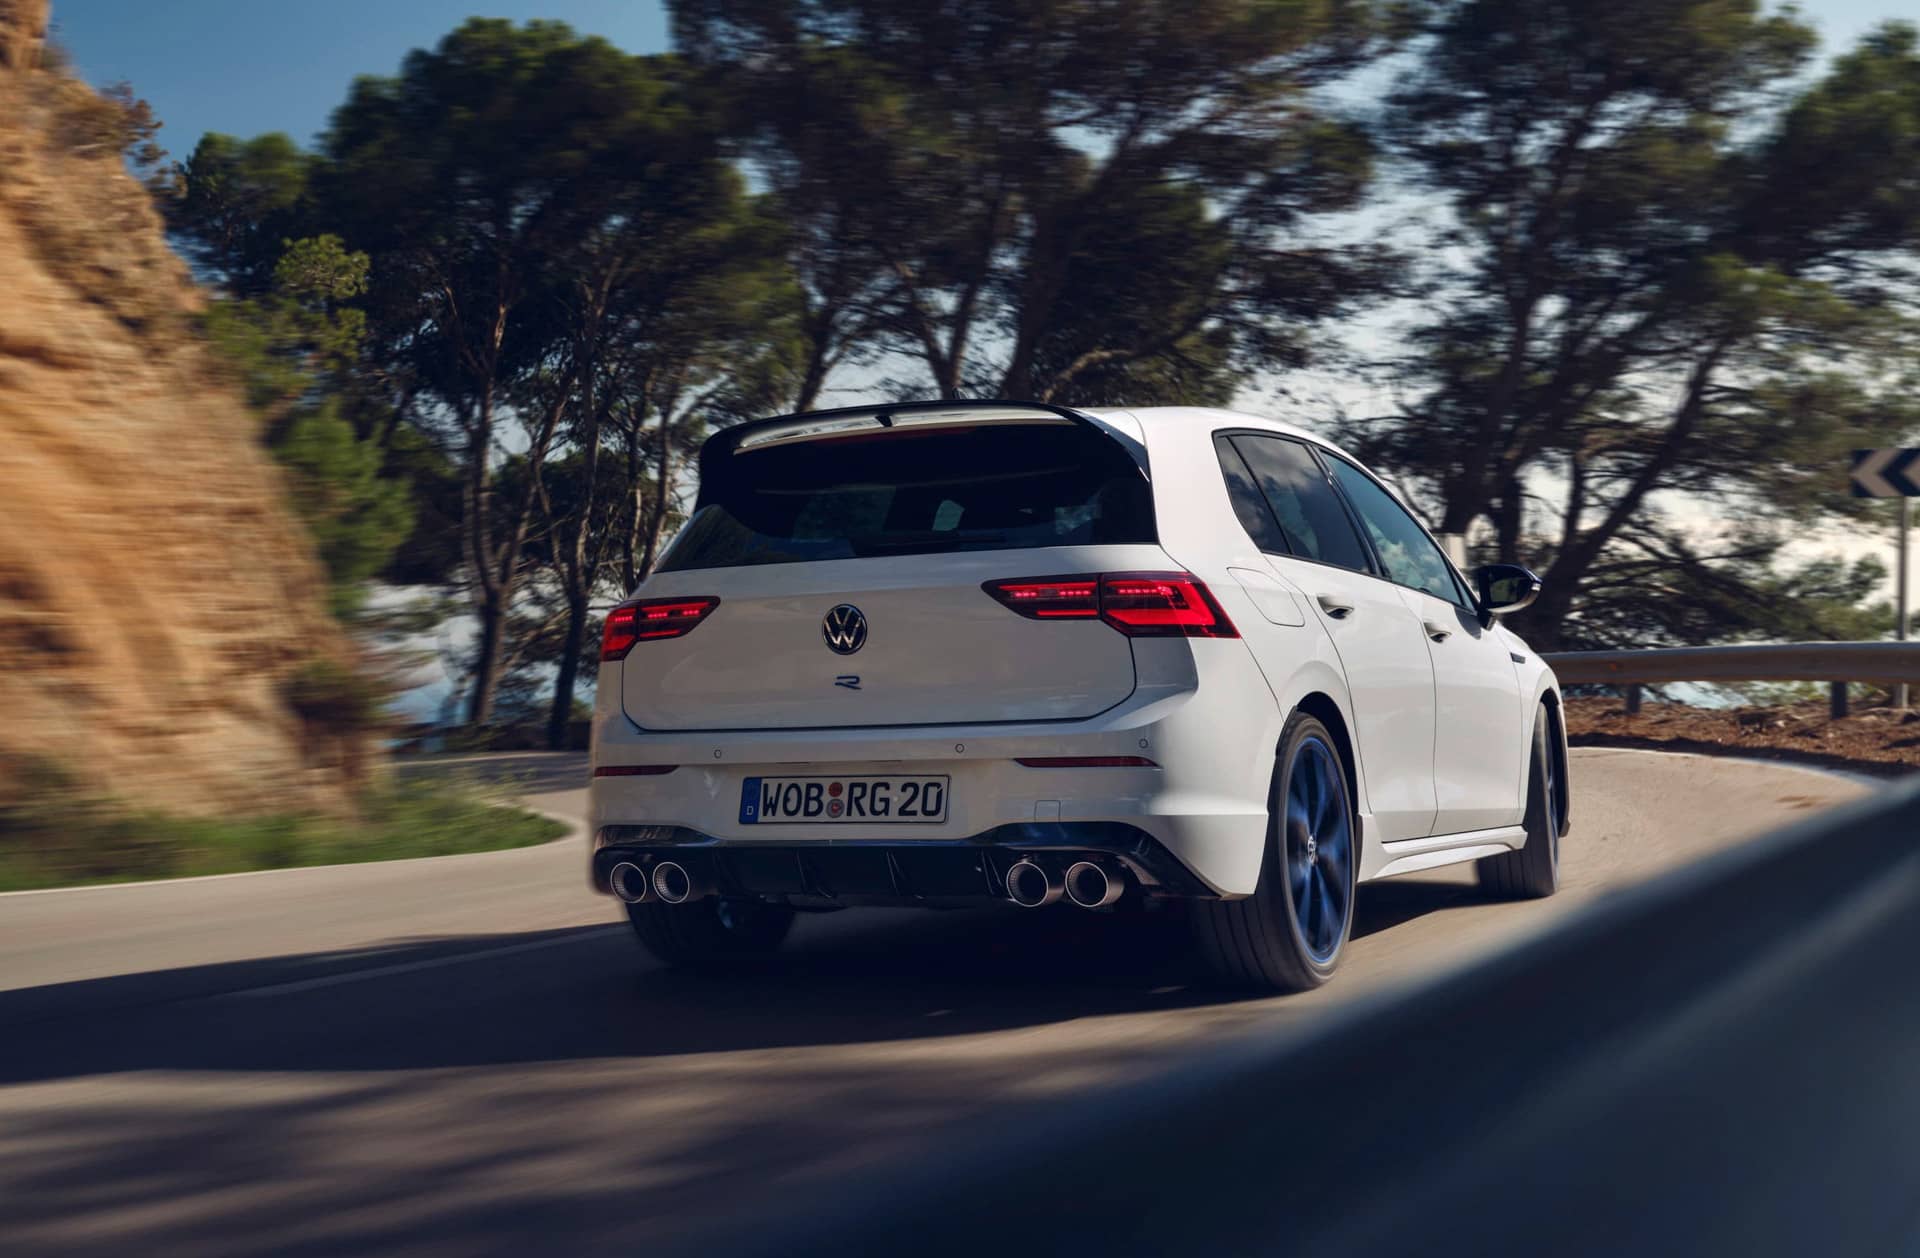 Volkswagen predstavil najvýkonnejší Golf v histórii. Oslávil tak 20. výročie výkonných modelov R